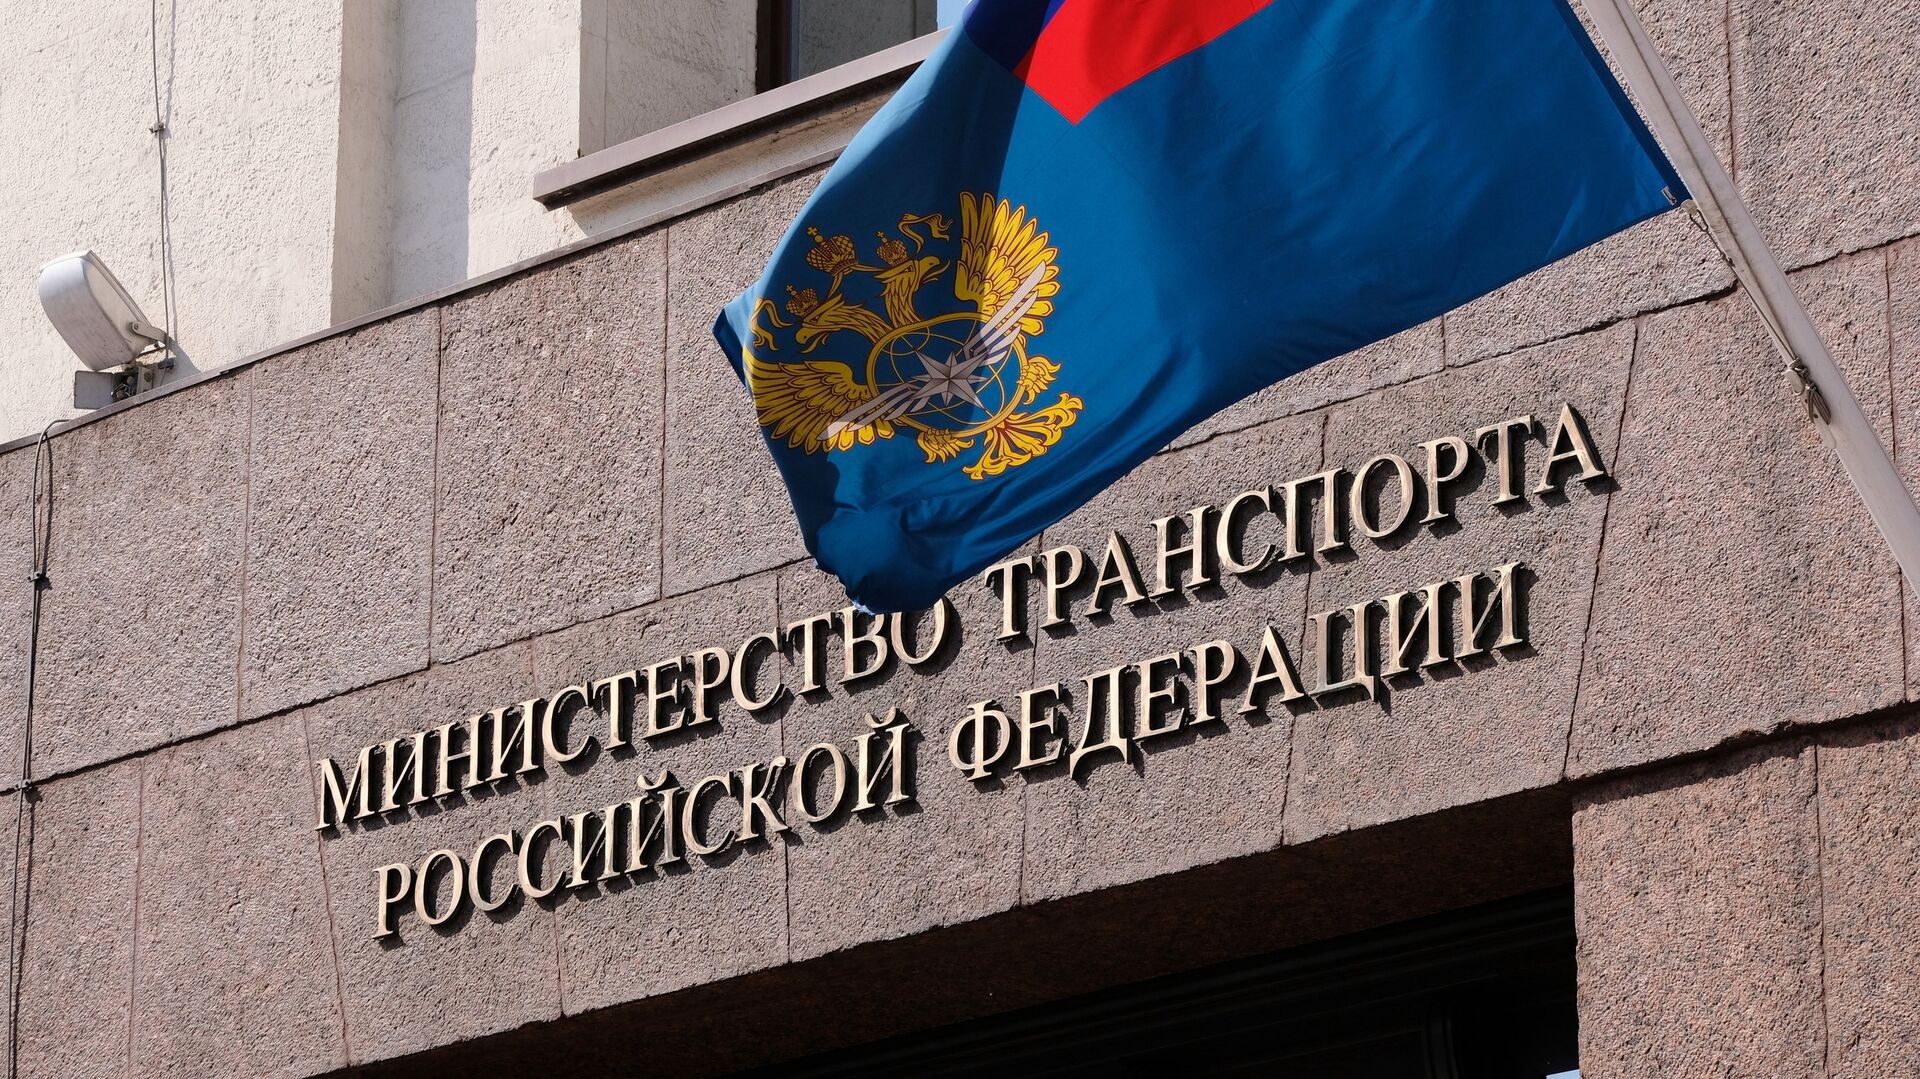 Правительство выделит Минтрансу свыше двух миллиардов рублей